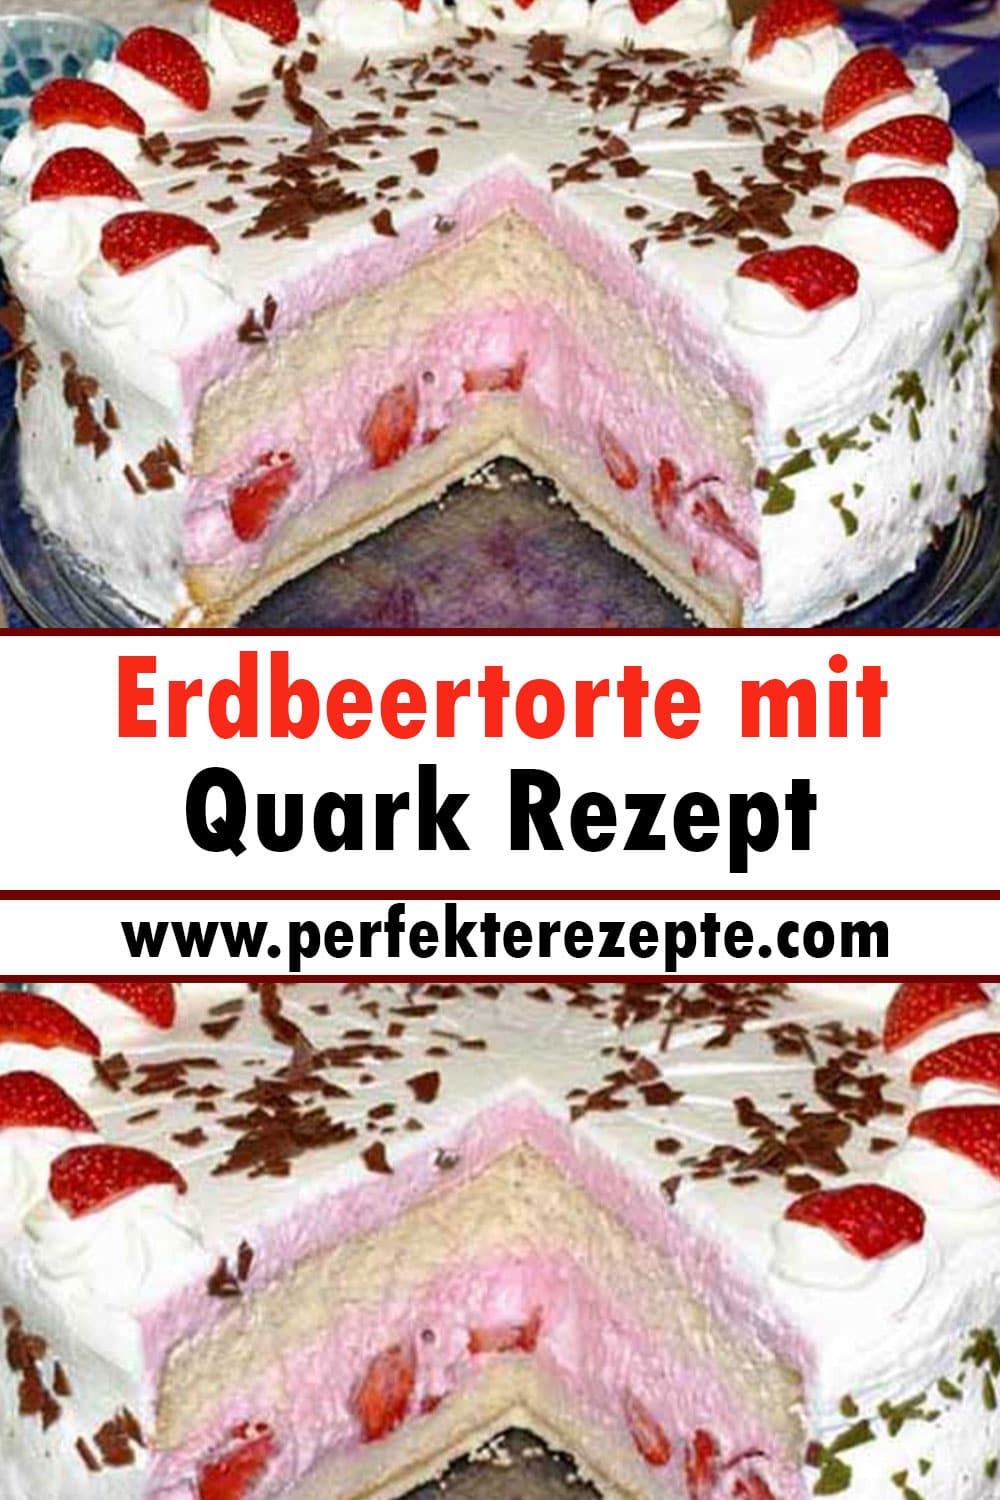 Erdbeertorte mit Quark Rezept